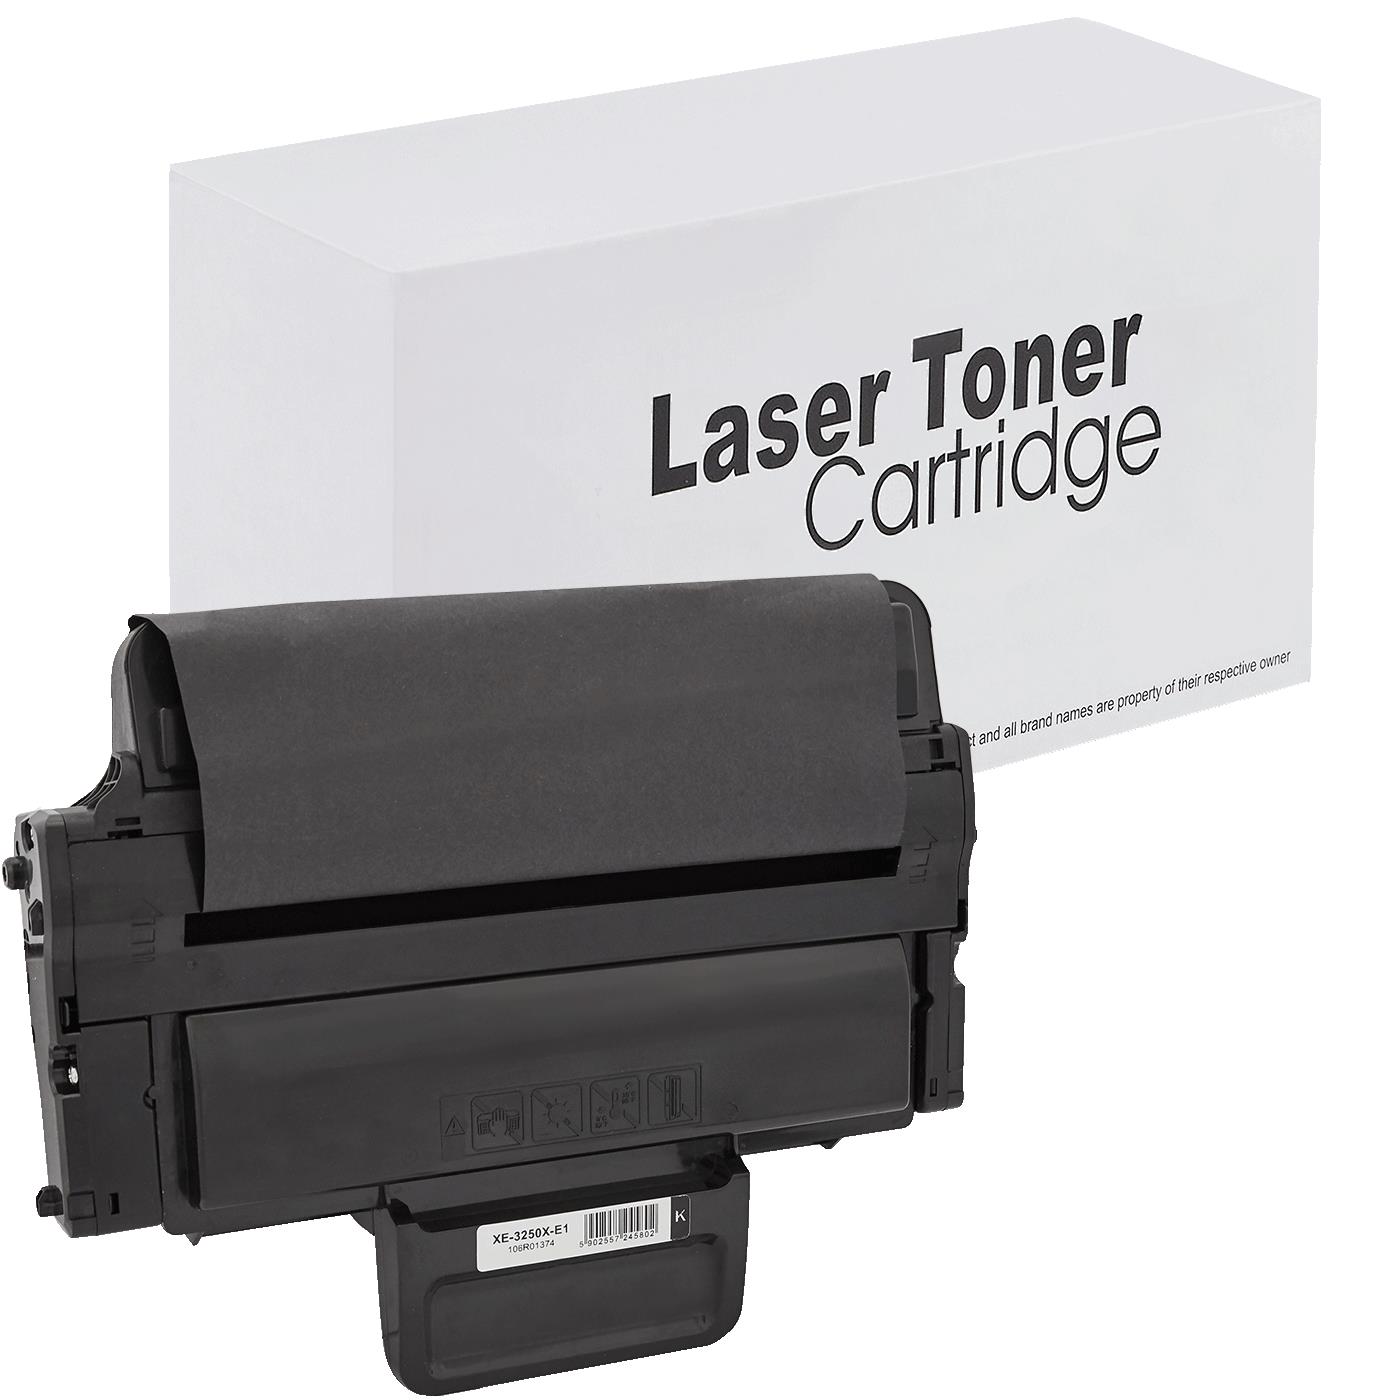 съвместима тонер касета за принтери и печатащи устройства на Xerox XEROX: PHASER 3250, 3250D, 3250DN,  3250V D, XEROX PHASER 3250,  new new Toner XE-3250X | 106R01374. Ниски цени, прецизно изпълнение, високо качество.